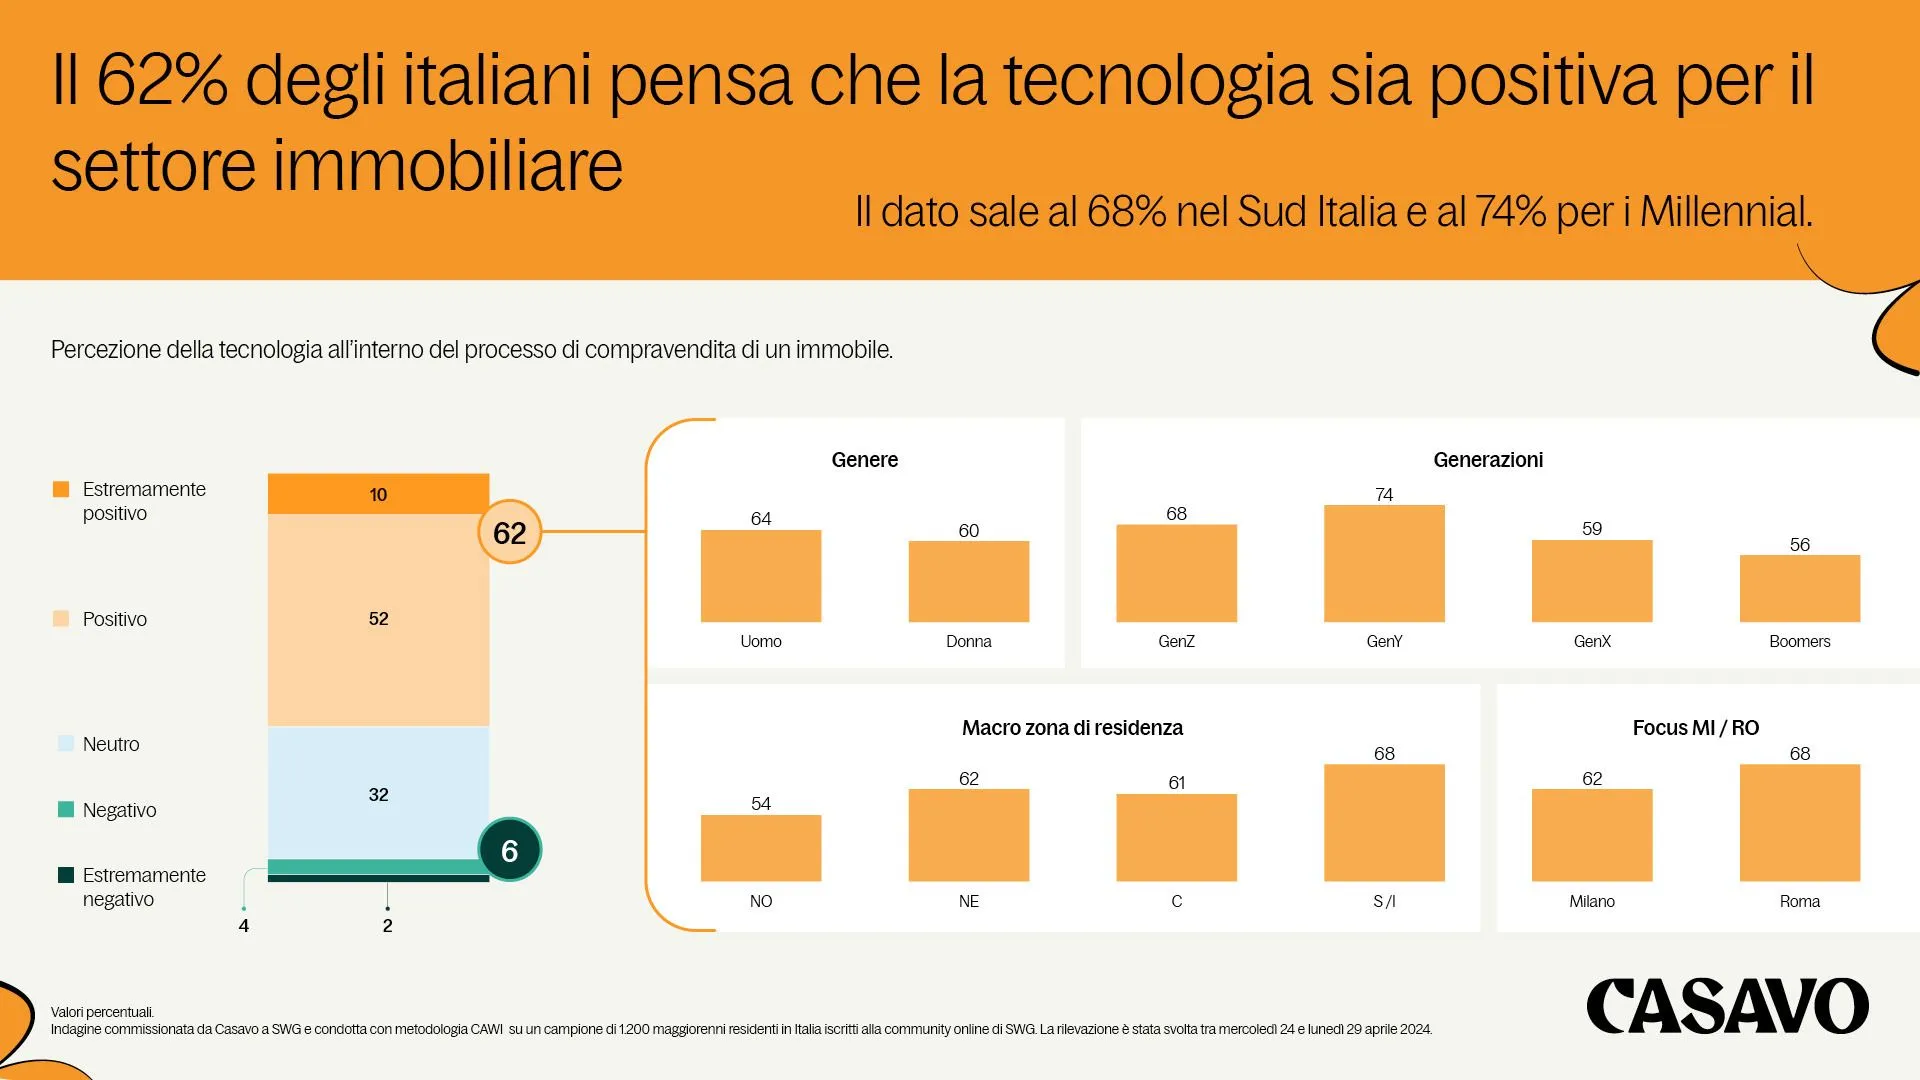 Il 62% degli italiani vede la tecnologia come elemento positivo per il settore immobiliare